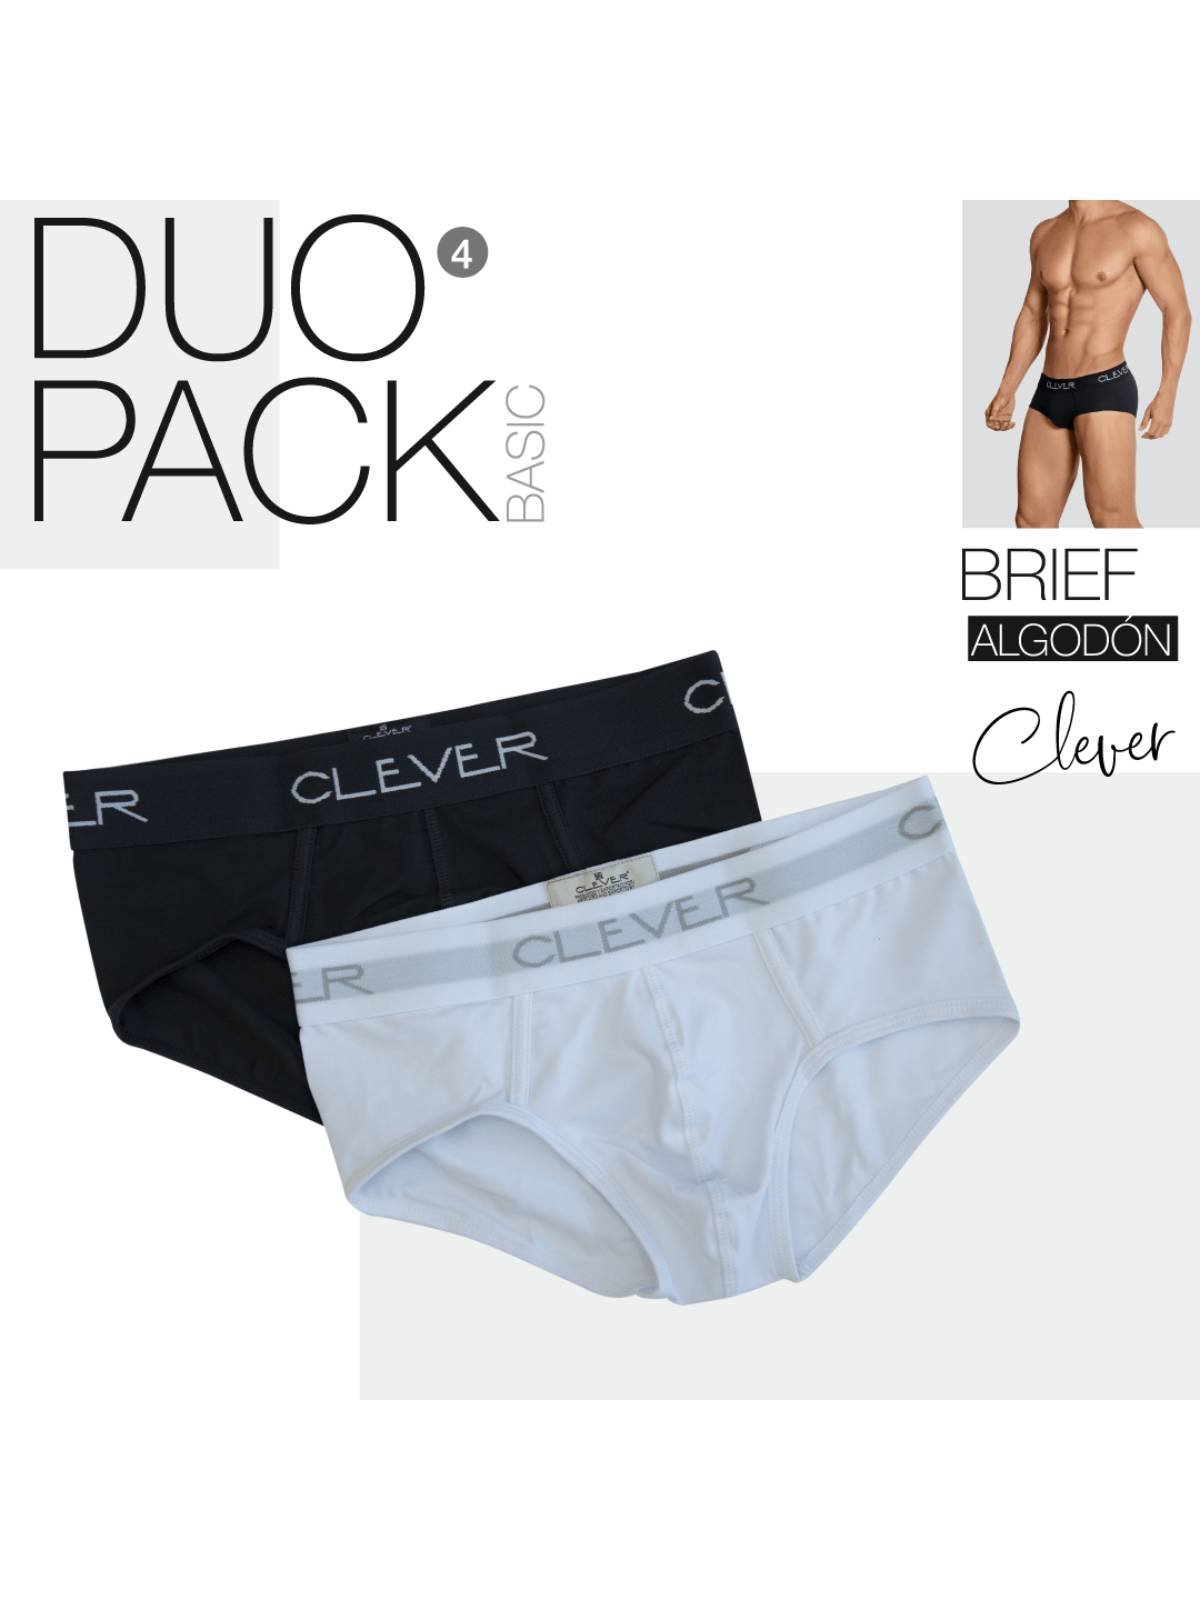 Clever Basic Brief Duo Pack  Brief men underwear bei BRUNOS bestellen